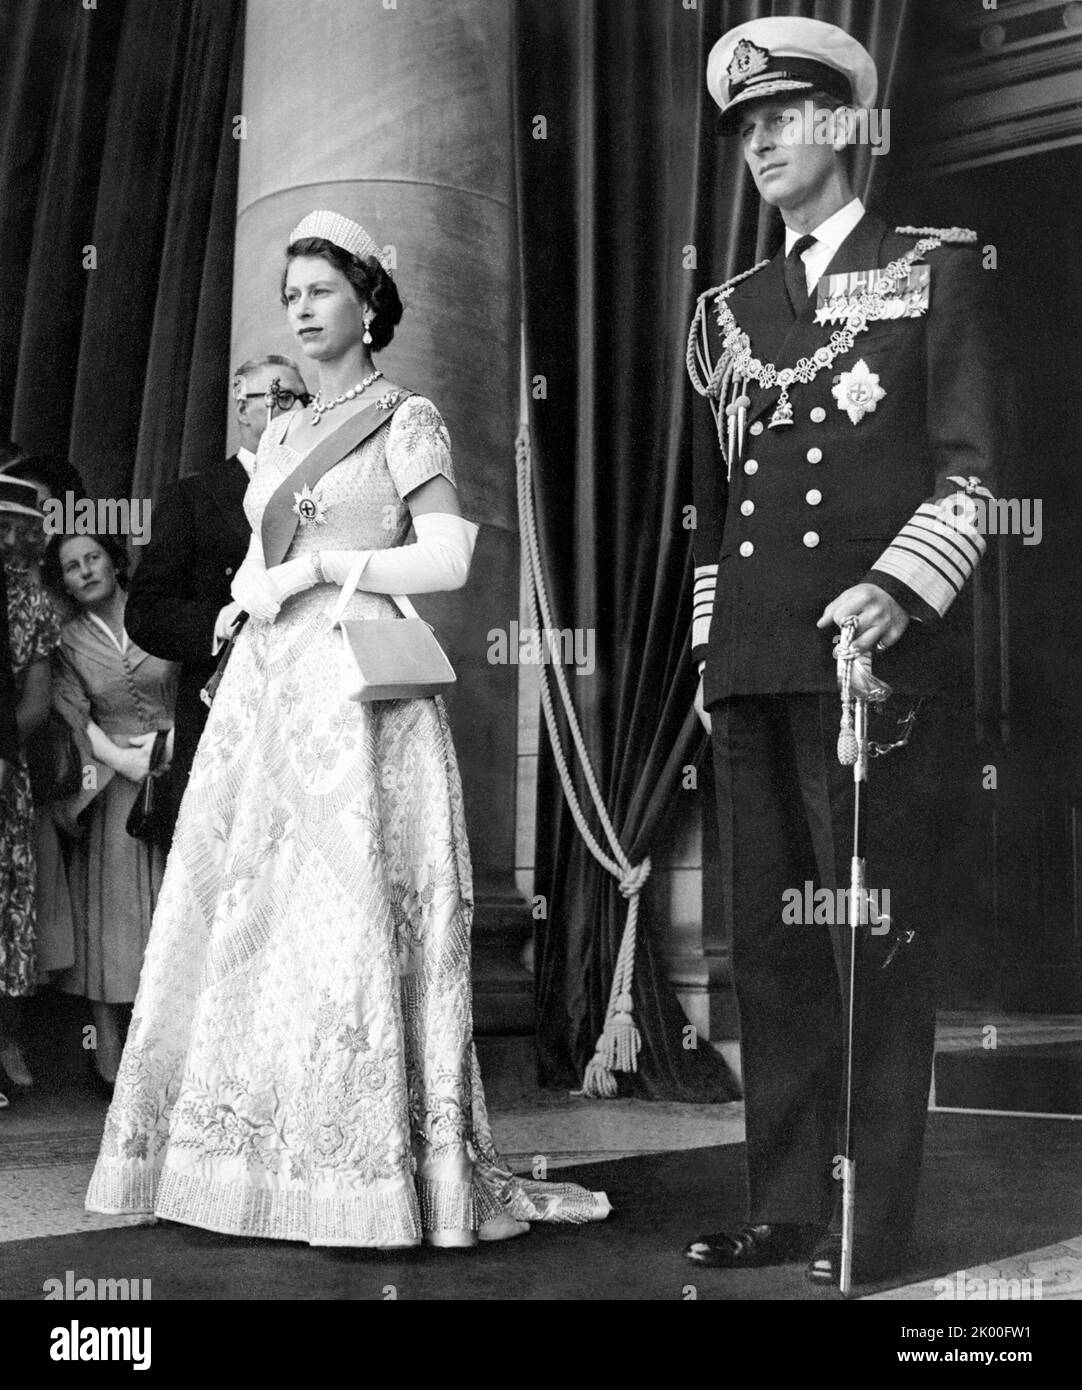 Königin Elizabeth II. Und Prinz Philip, Herzog von Edinburgh, in New South Wales während der Royal Tour der Königin im Februar 1954 in Australien. Stockfoto